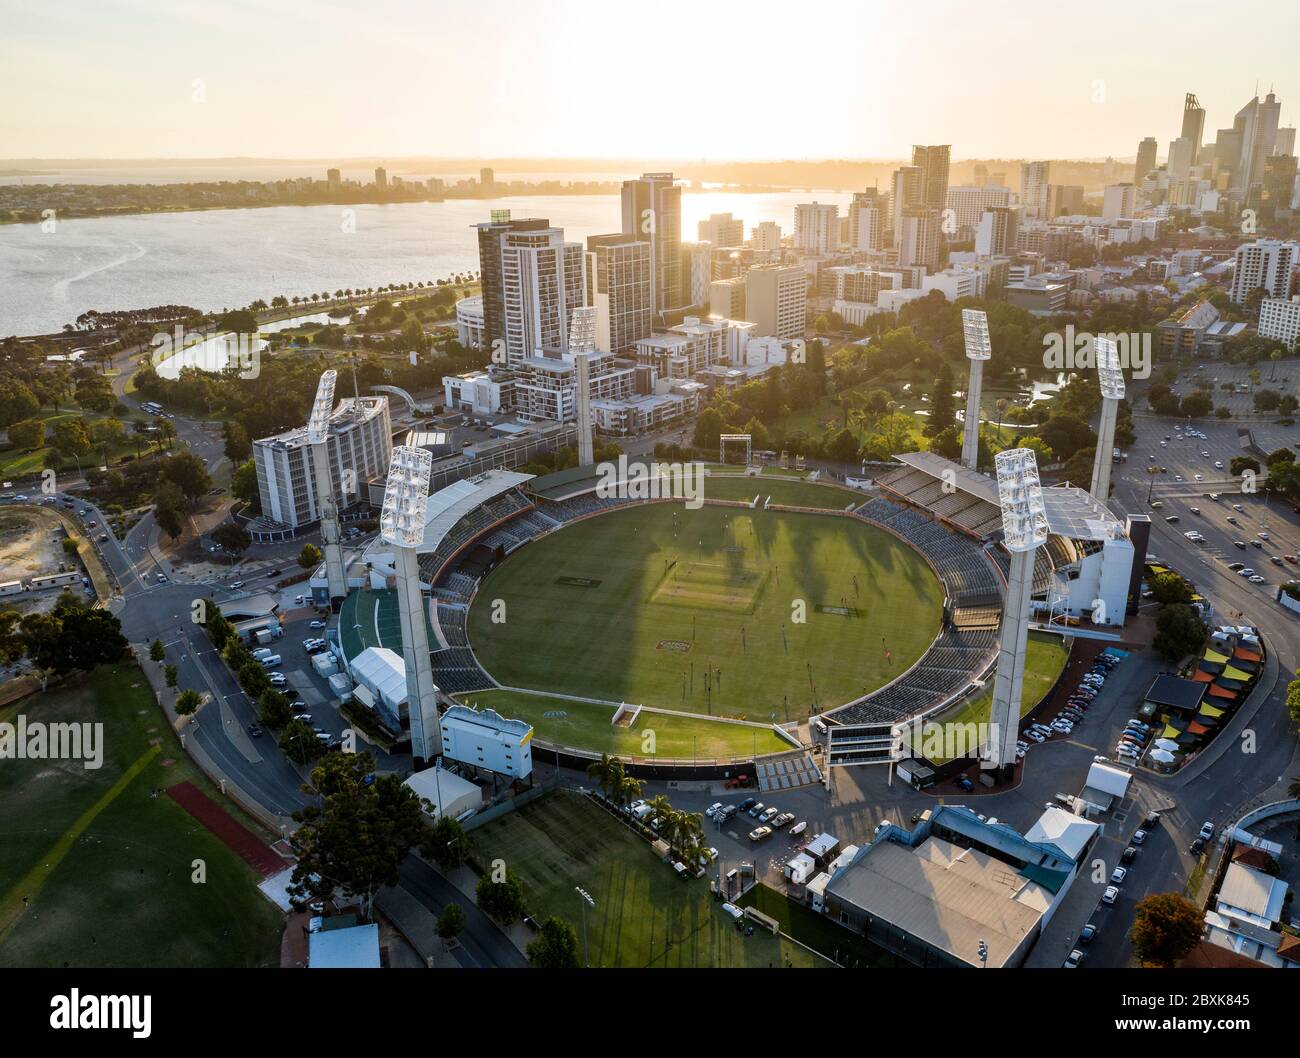 Perth Australie 5 novembre 2019 : vue aérienne du stade WACA et de la rivière Swan au coucher du soleil à Perth, Australie occidentale Banque D'Images